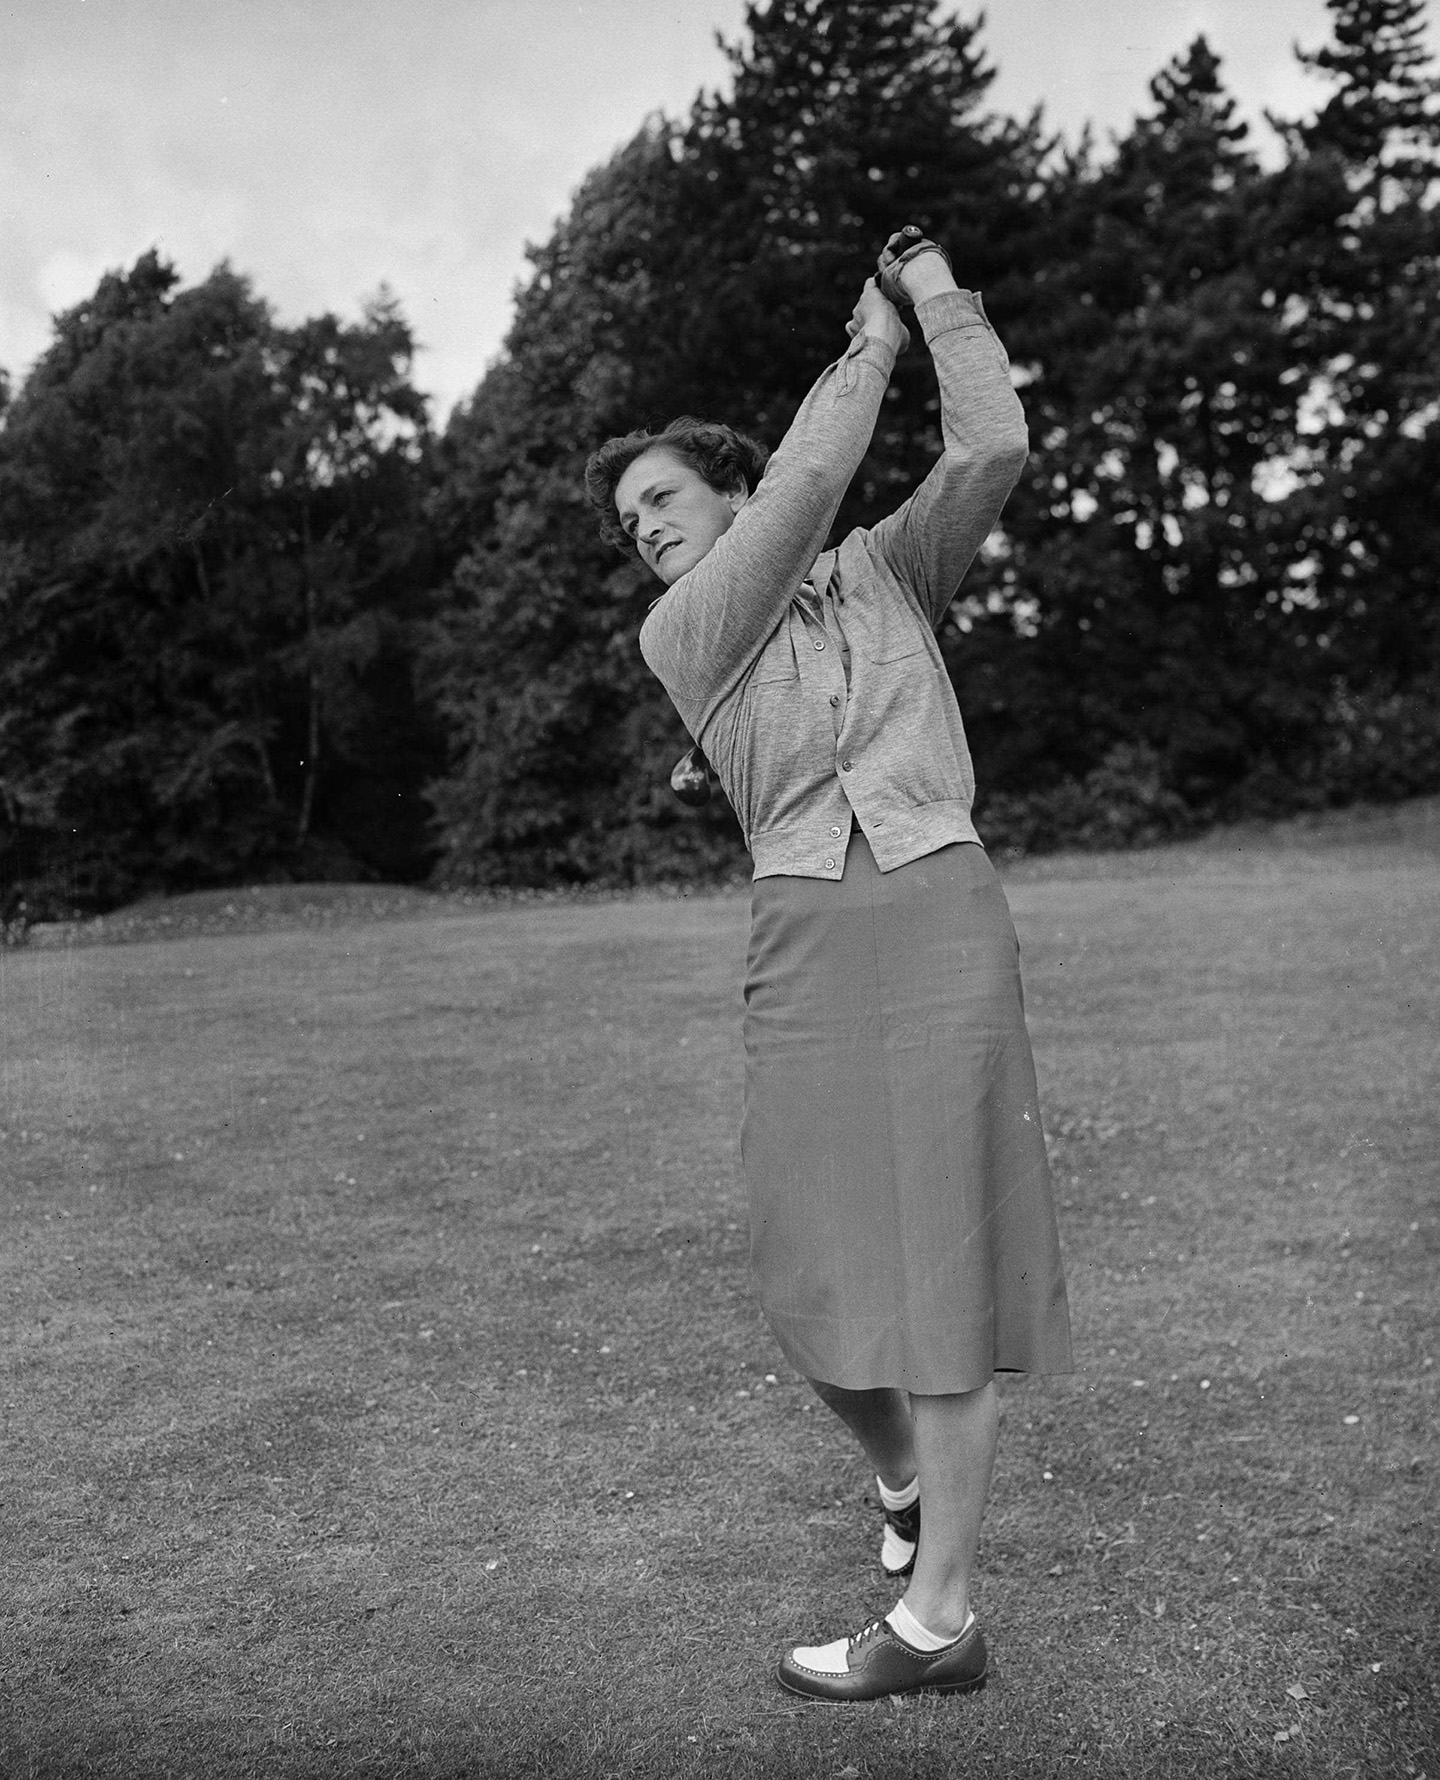 Nhà vô địch golf Babe Zaharias đang thi đấu, 1951. (Ảnh: Allsport/Getty Images)